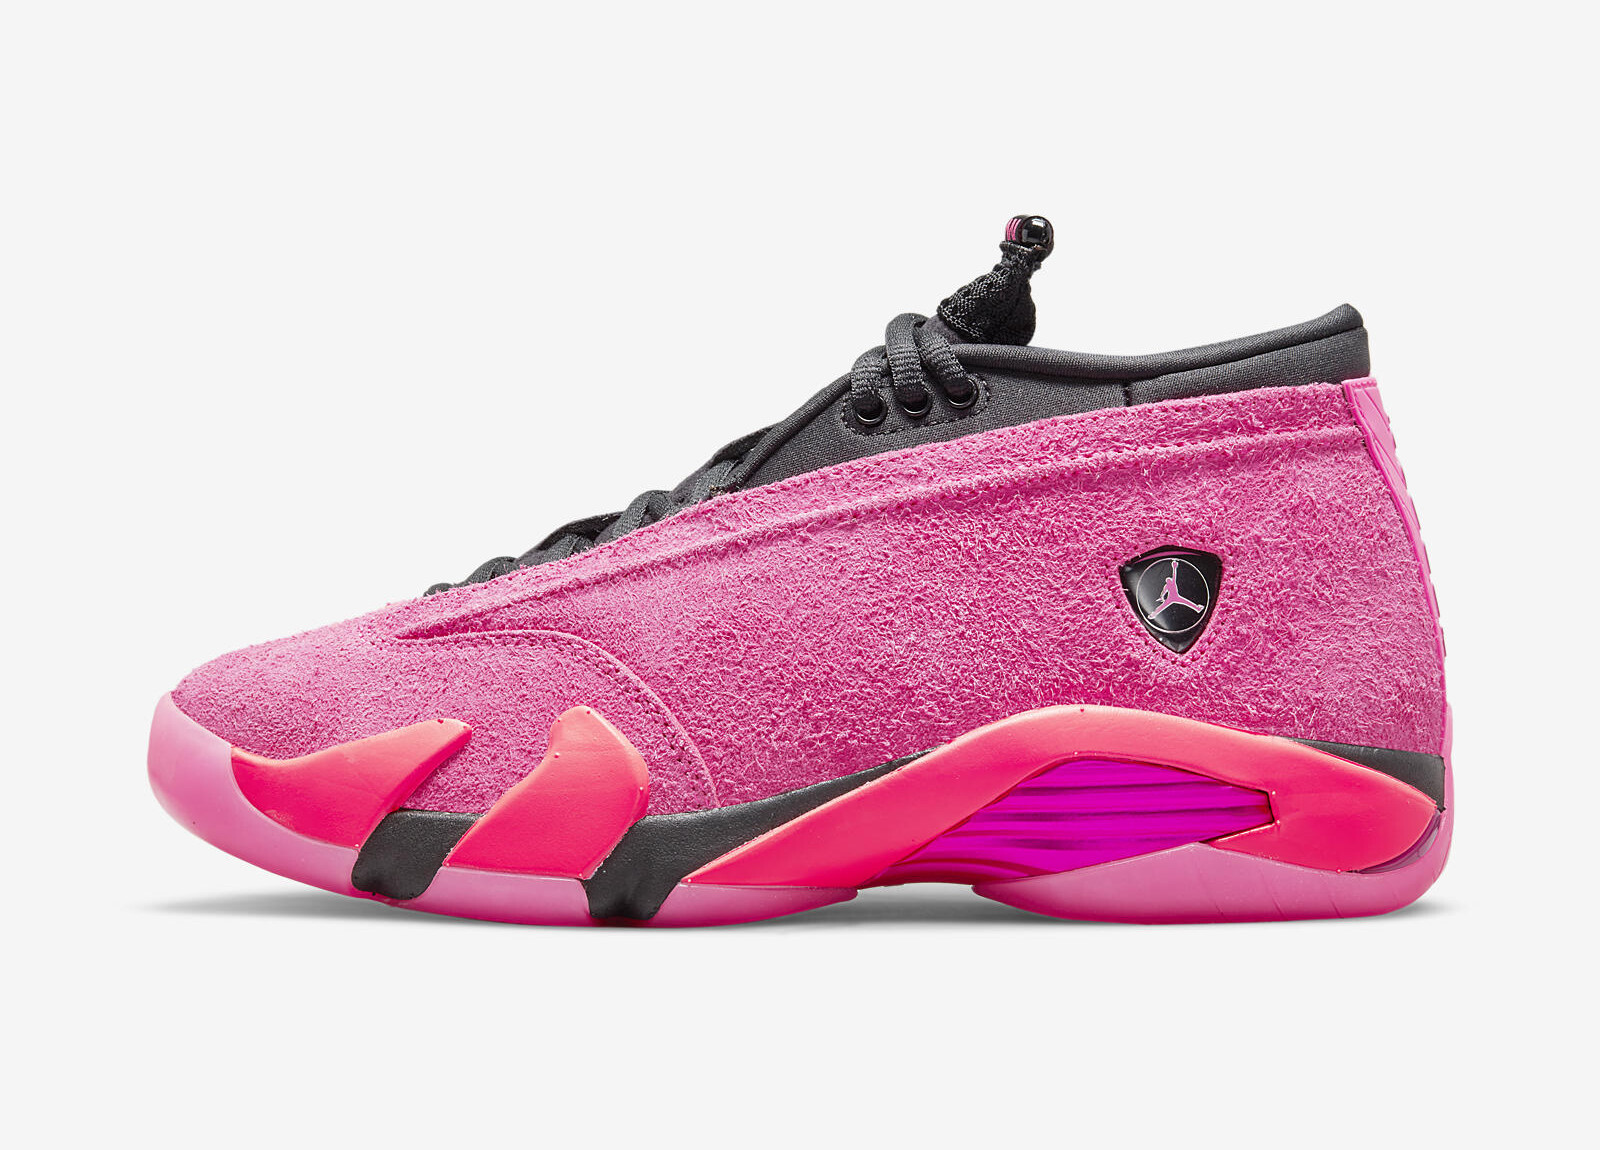 Air Jordan 14 Low
« Shocking Pink »